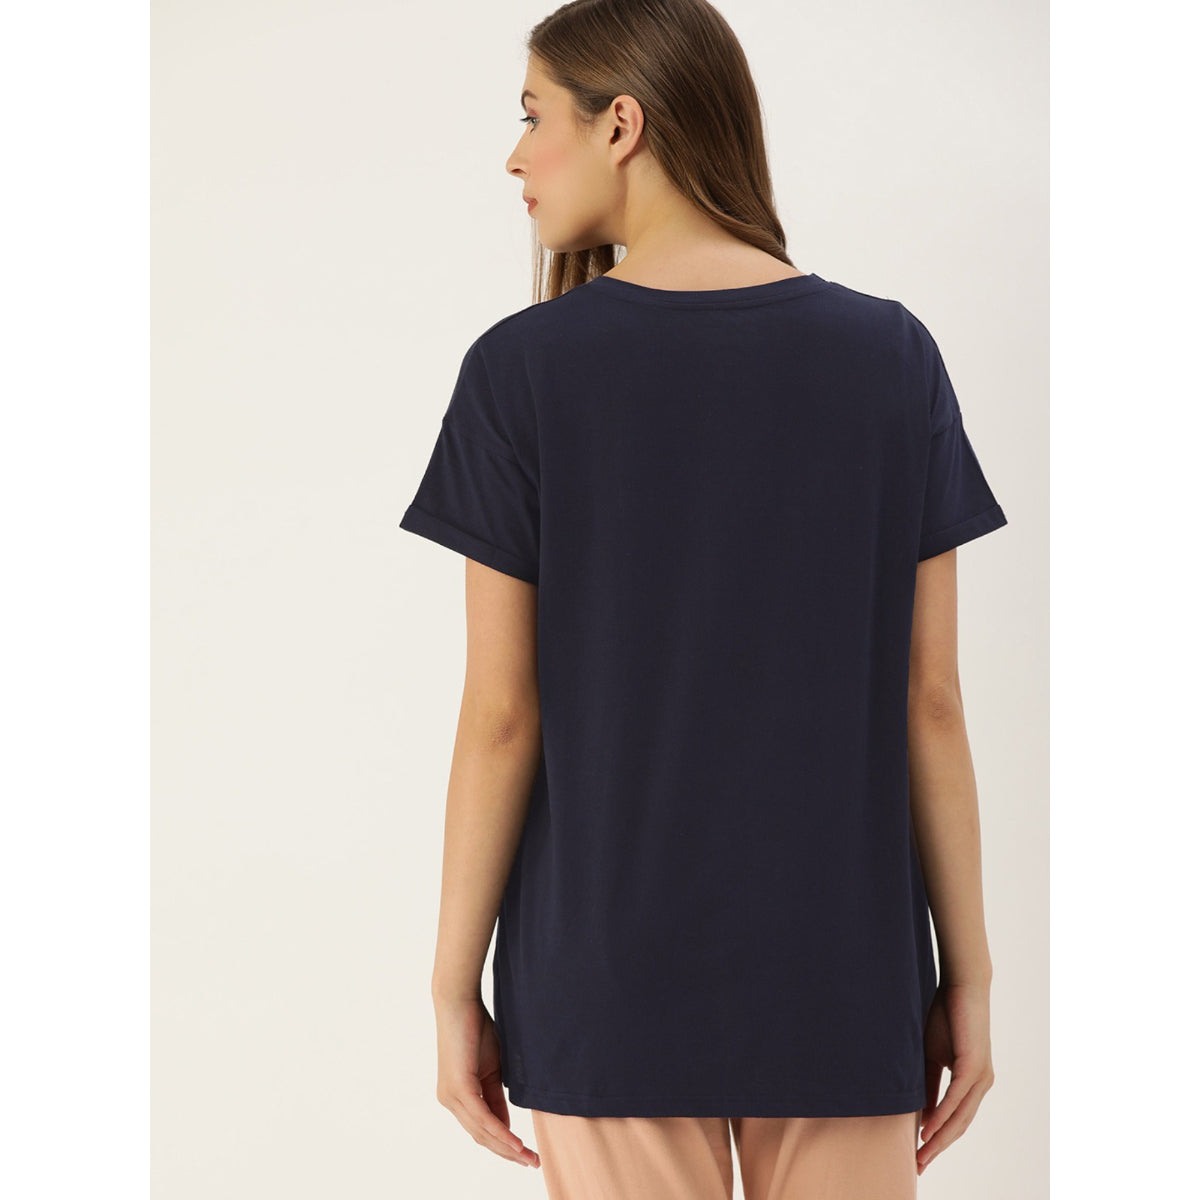 C982 Blue Women Printed T-shirt Dress - Clt.s